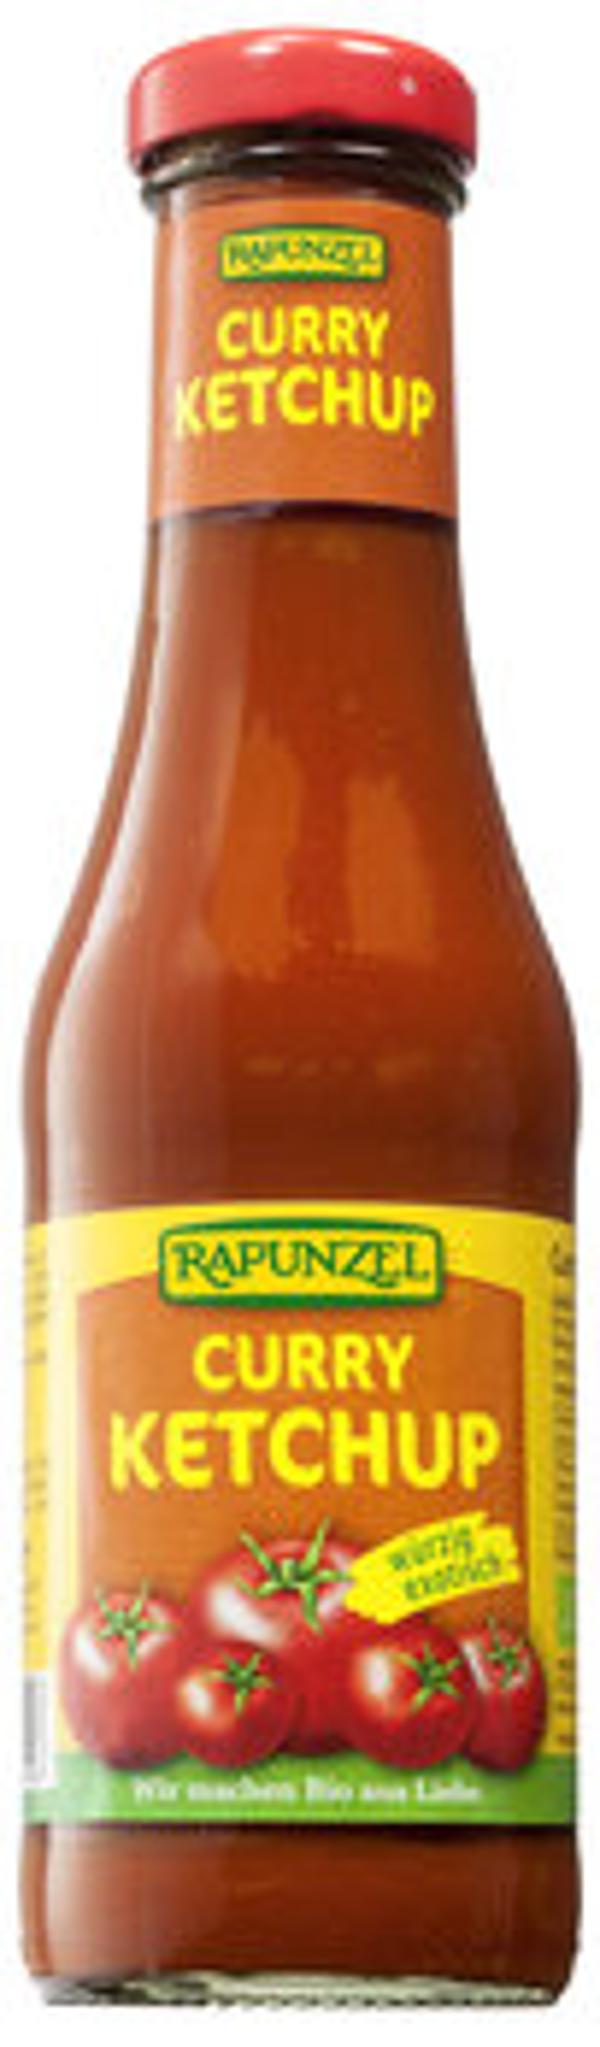 Produktfoto zu Rapunzel Curry Ketchup 450ml